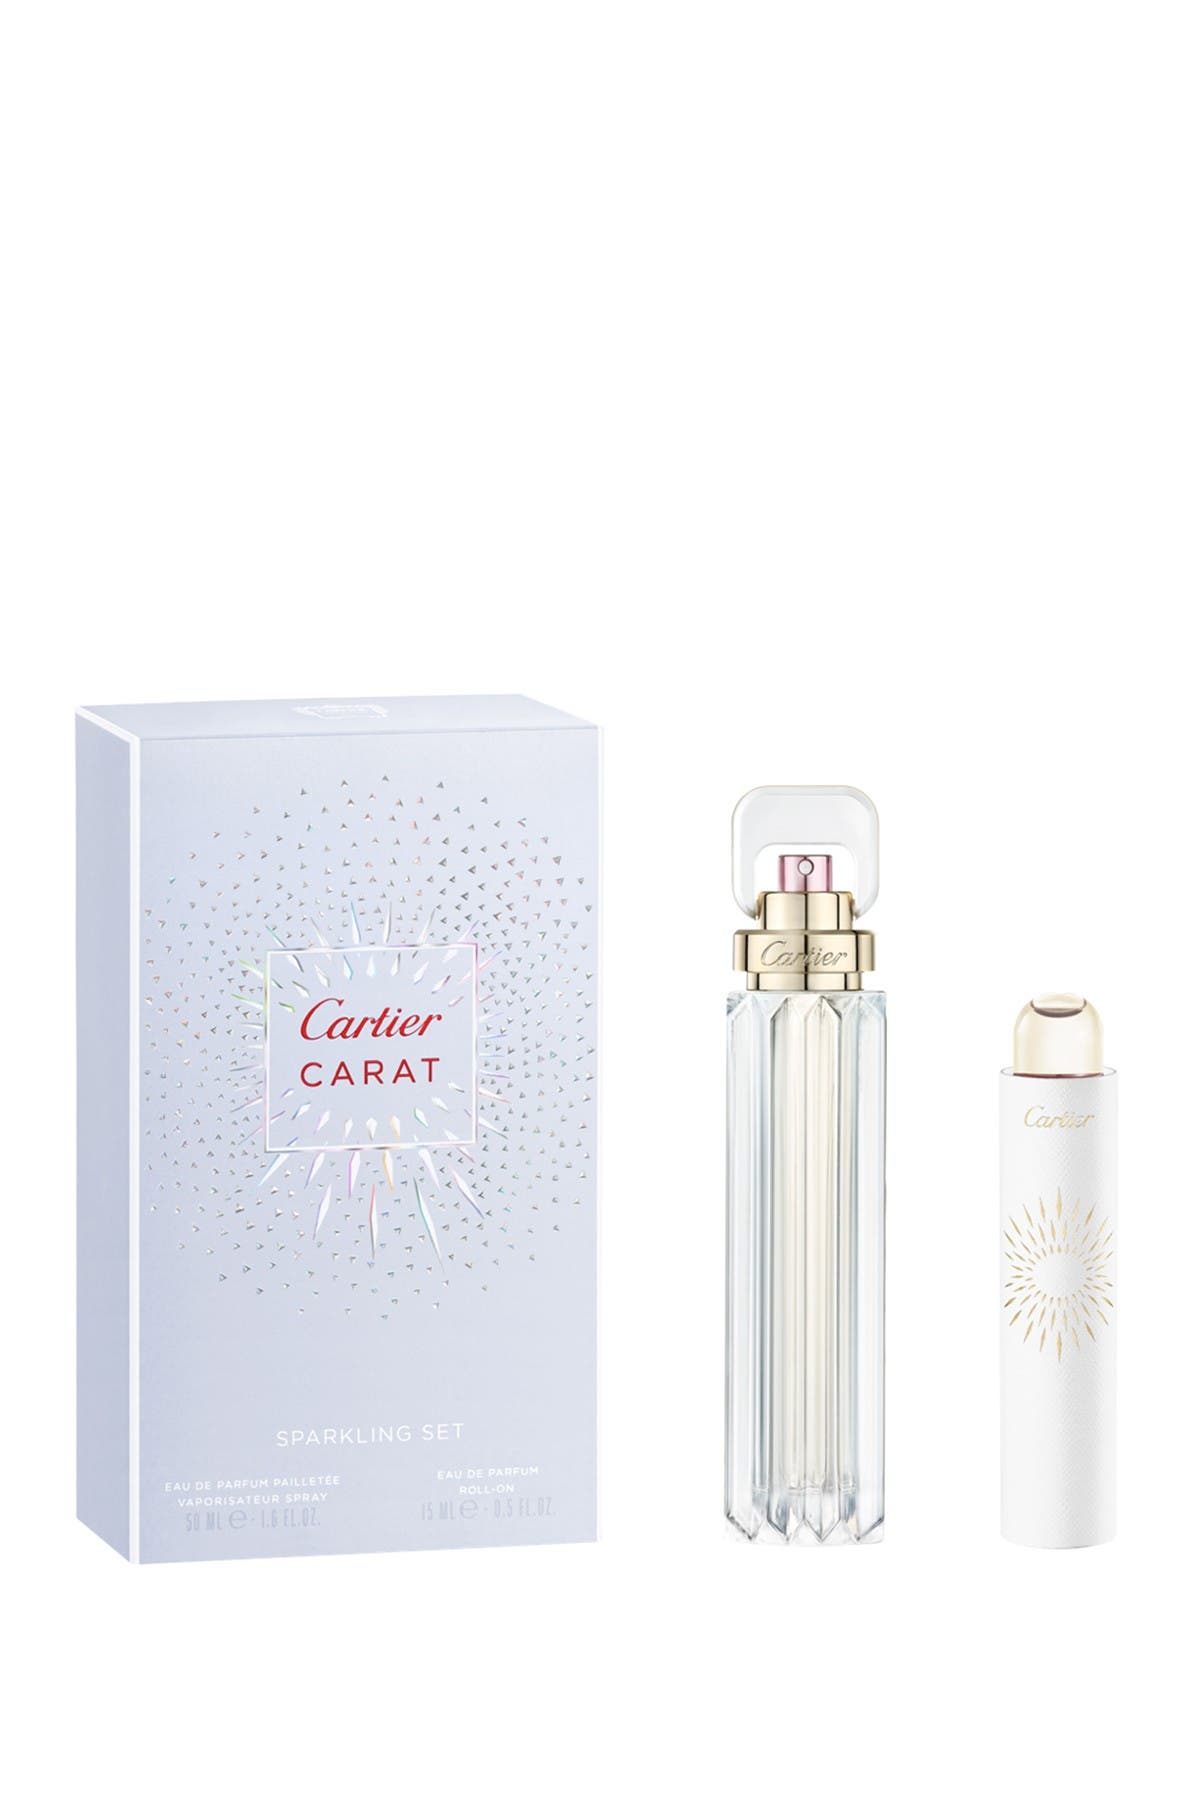 cartier carat parfum